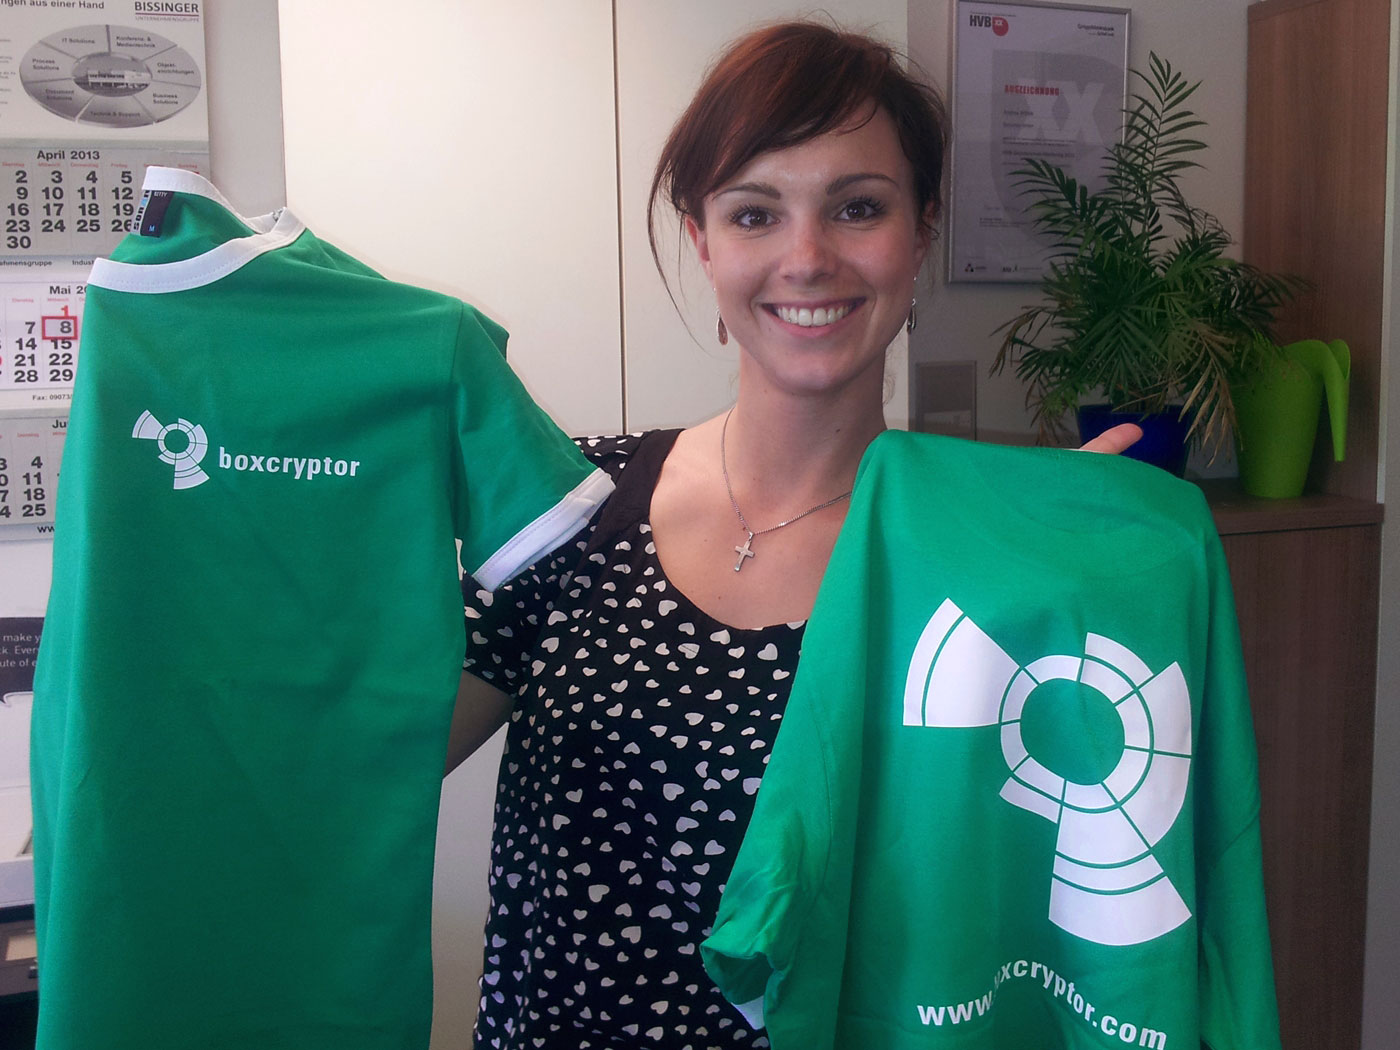 Andrea Pfundmeier, CEO, mit den neuen Boxcryptor T-Shirts, auf denen das neue Logo prangt